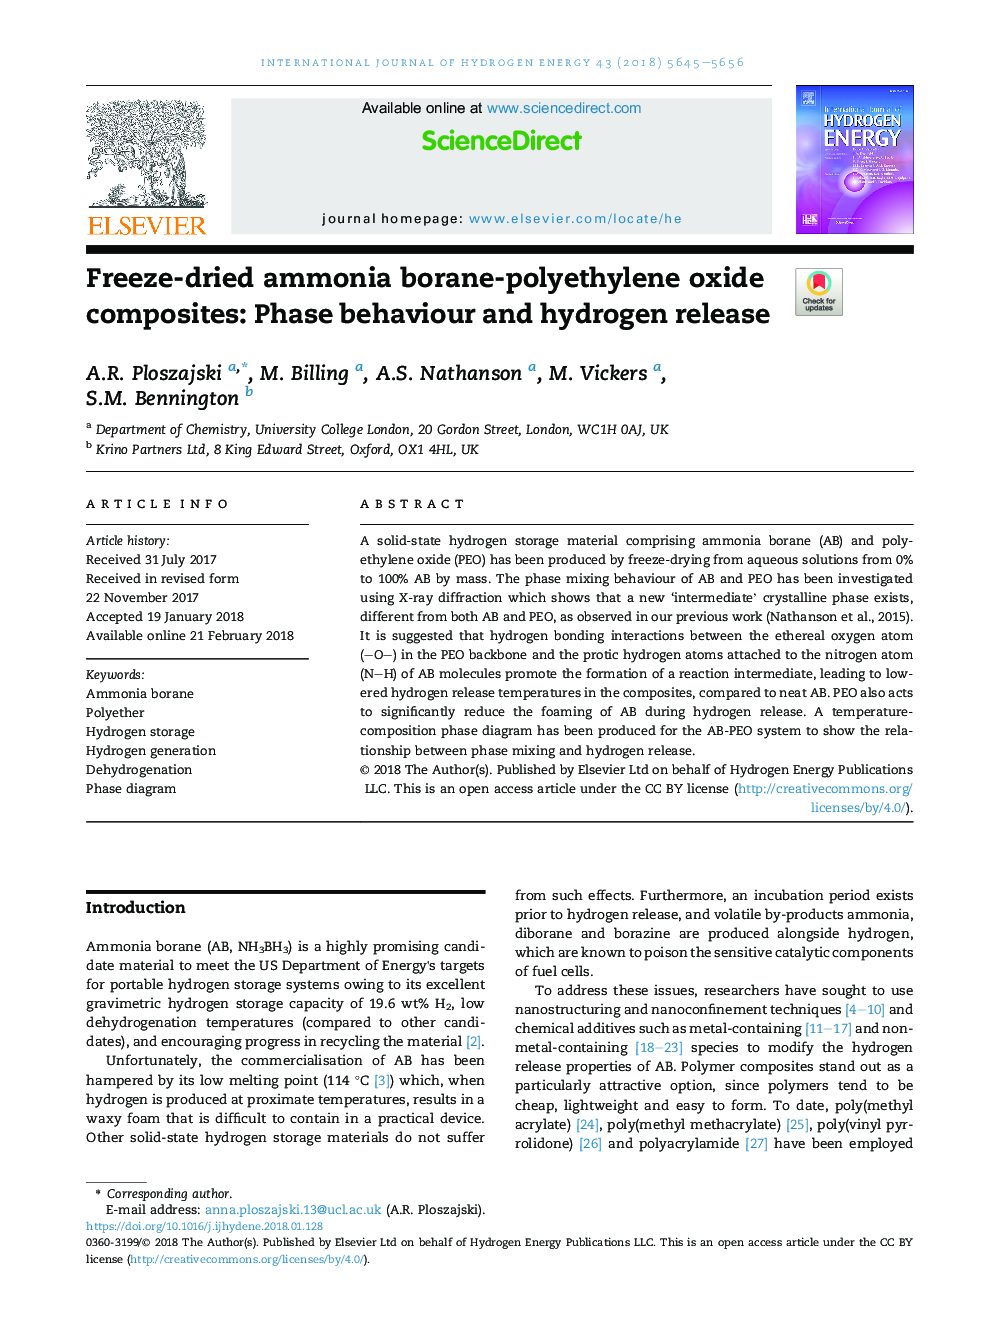 کامپوزیت آمونیاک بورن-پلی اتیلن اکسید فریز شده: رفتار فاز و انتشار هیدروژن 